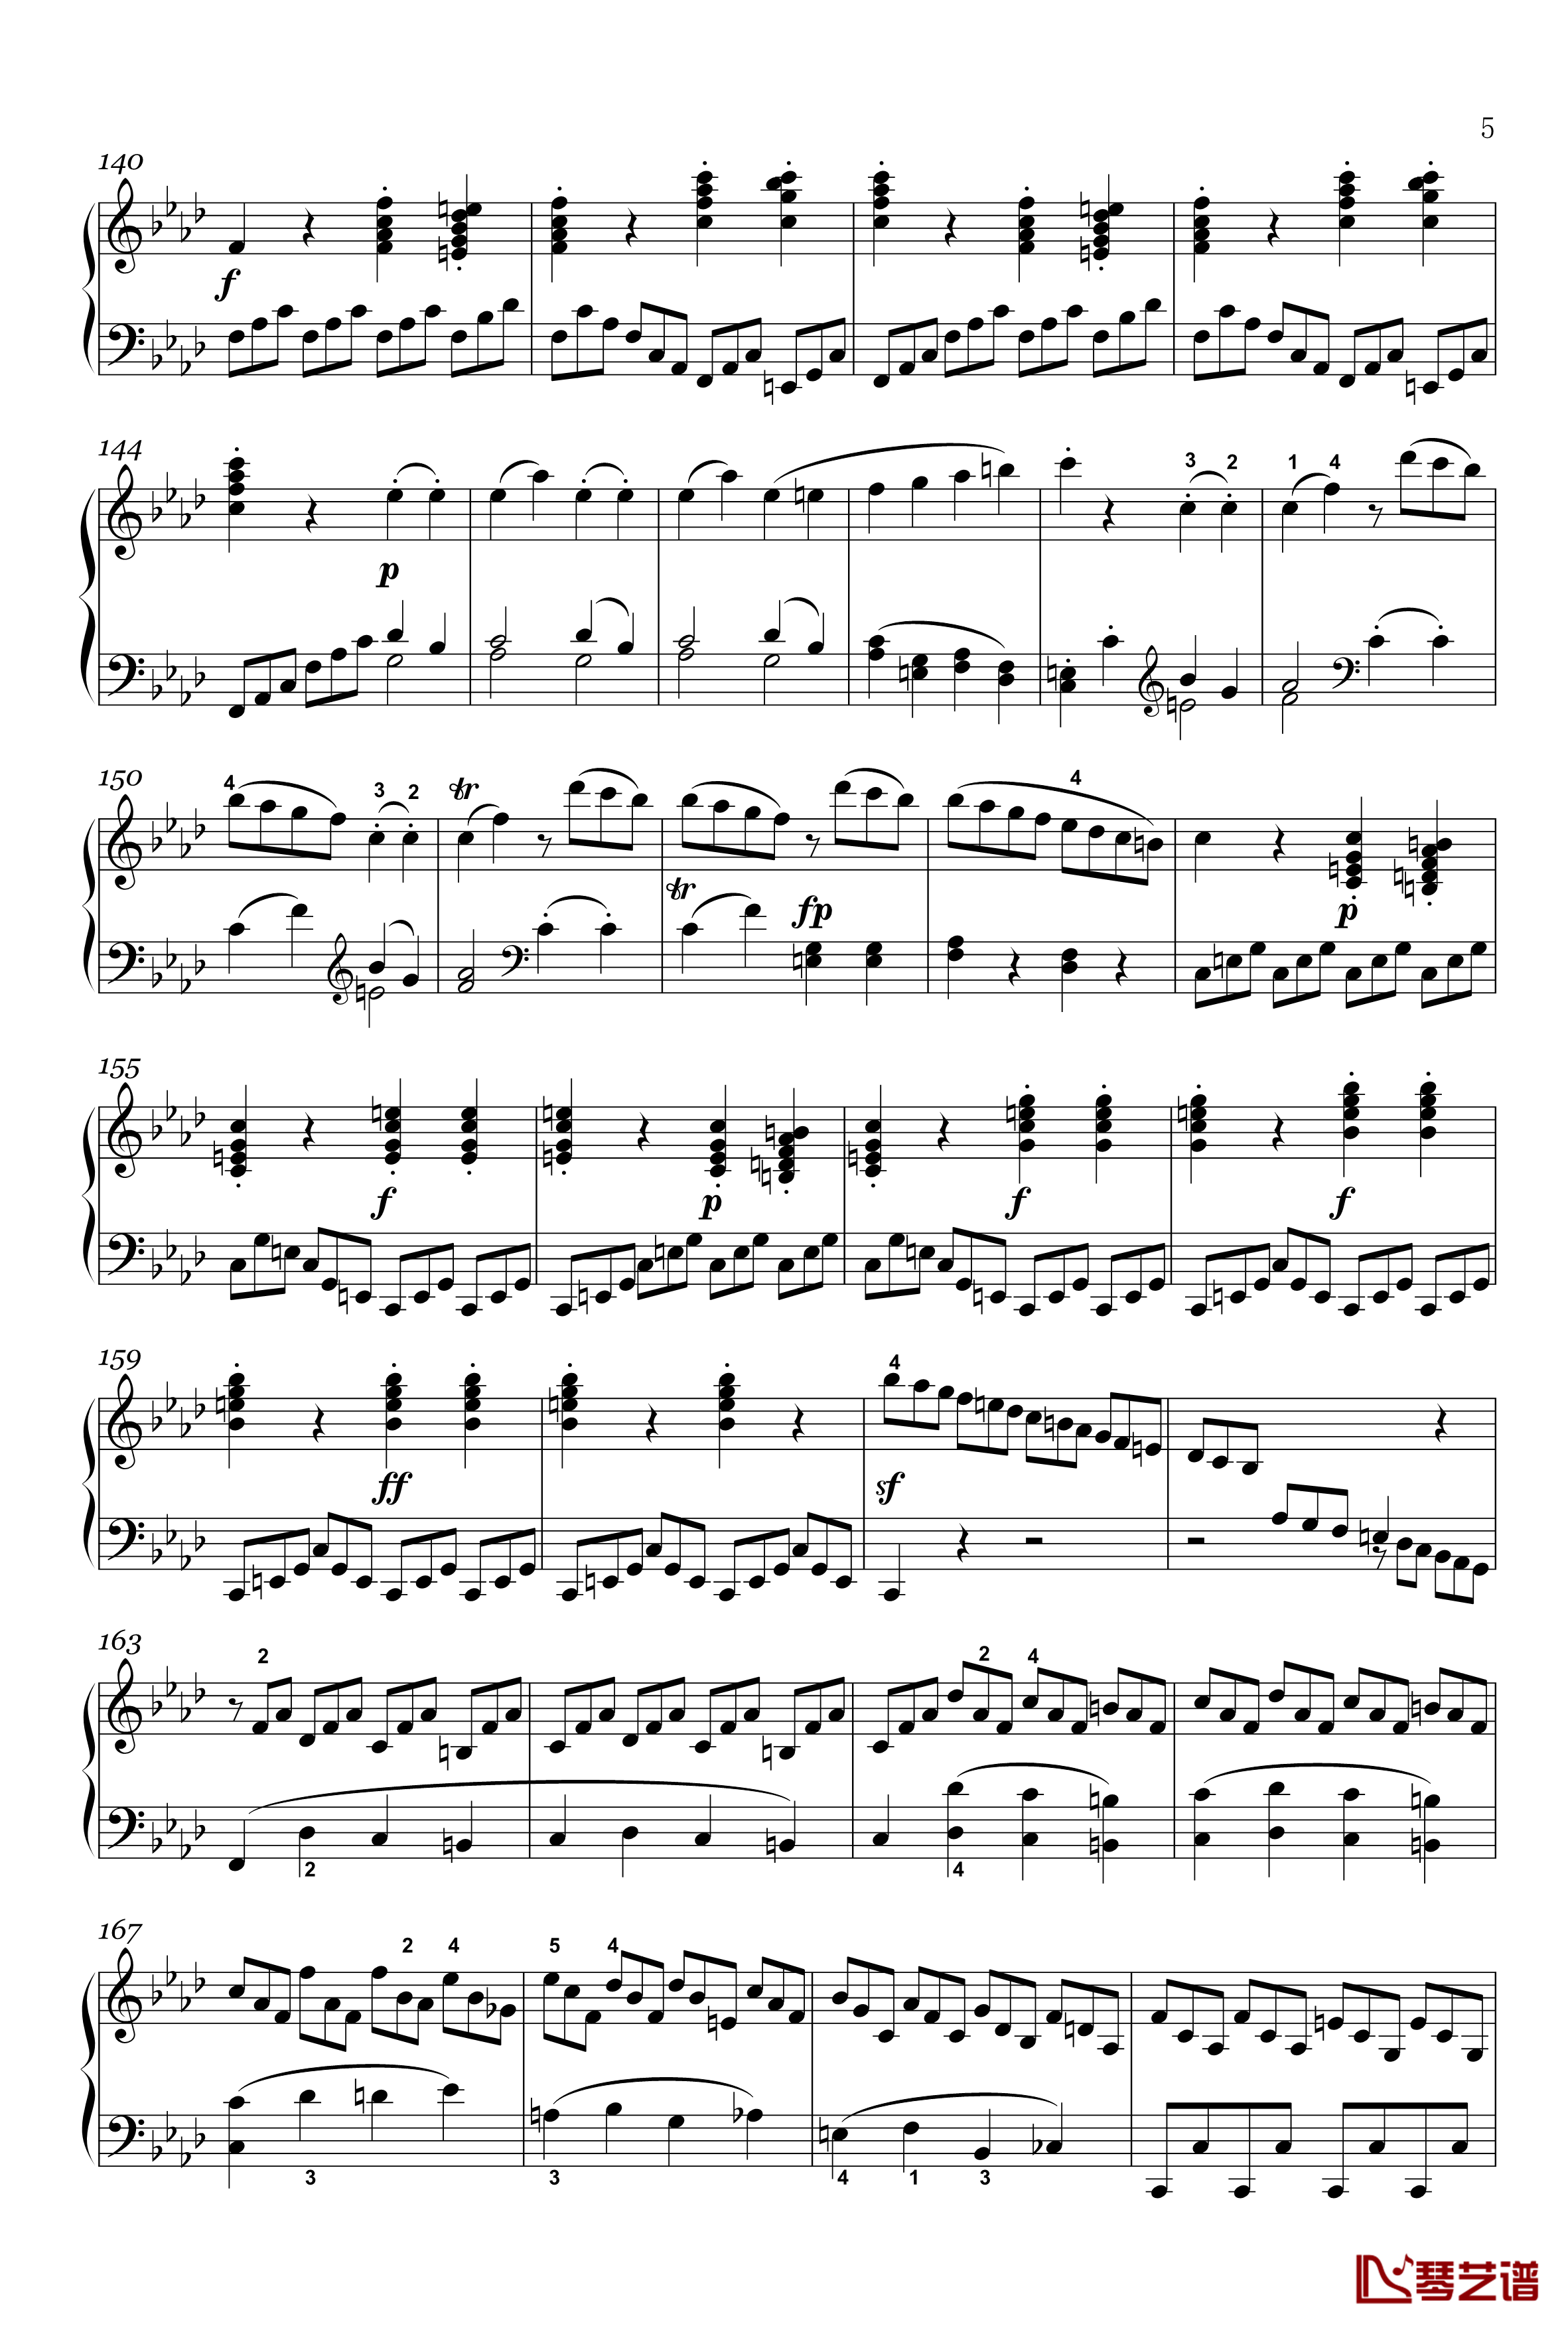 奏鸣曲钢琴谱-op-2-1-第四乐章-贝多芬-beethoven5